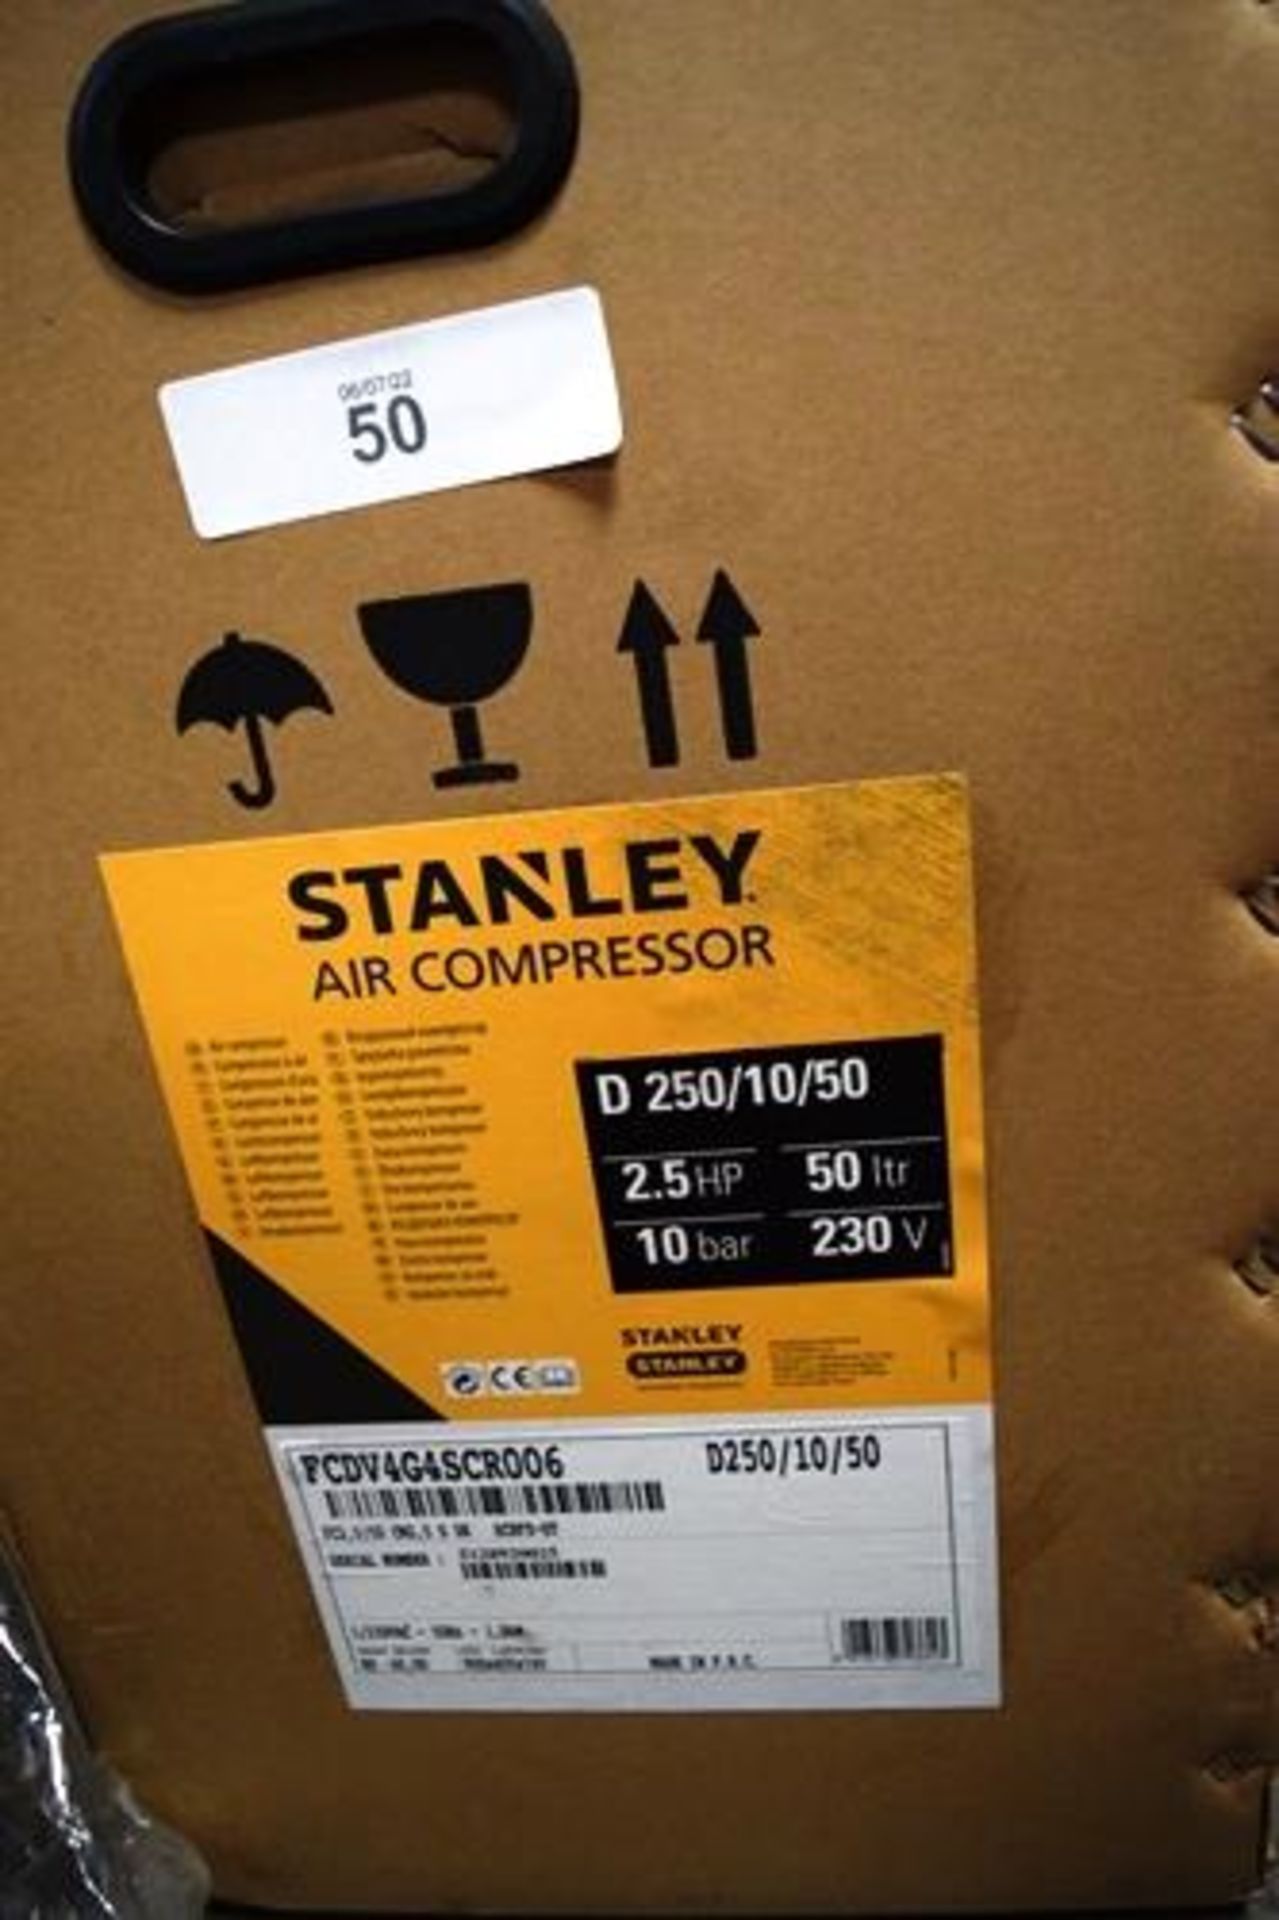 1 x Stanley D250/10/50 air compressor, 1.5kw, 50hz, 230V, 50ltr capacity, 2.5hp 10 bar - Sealed